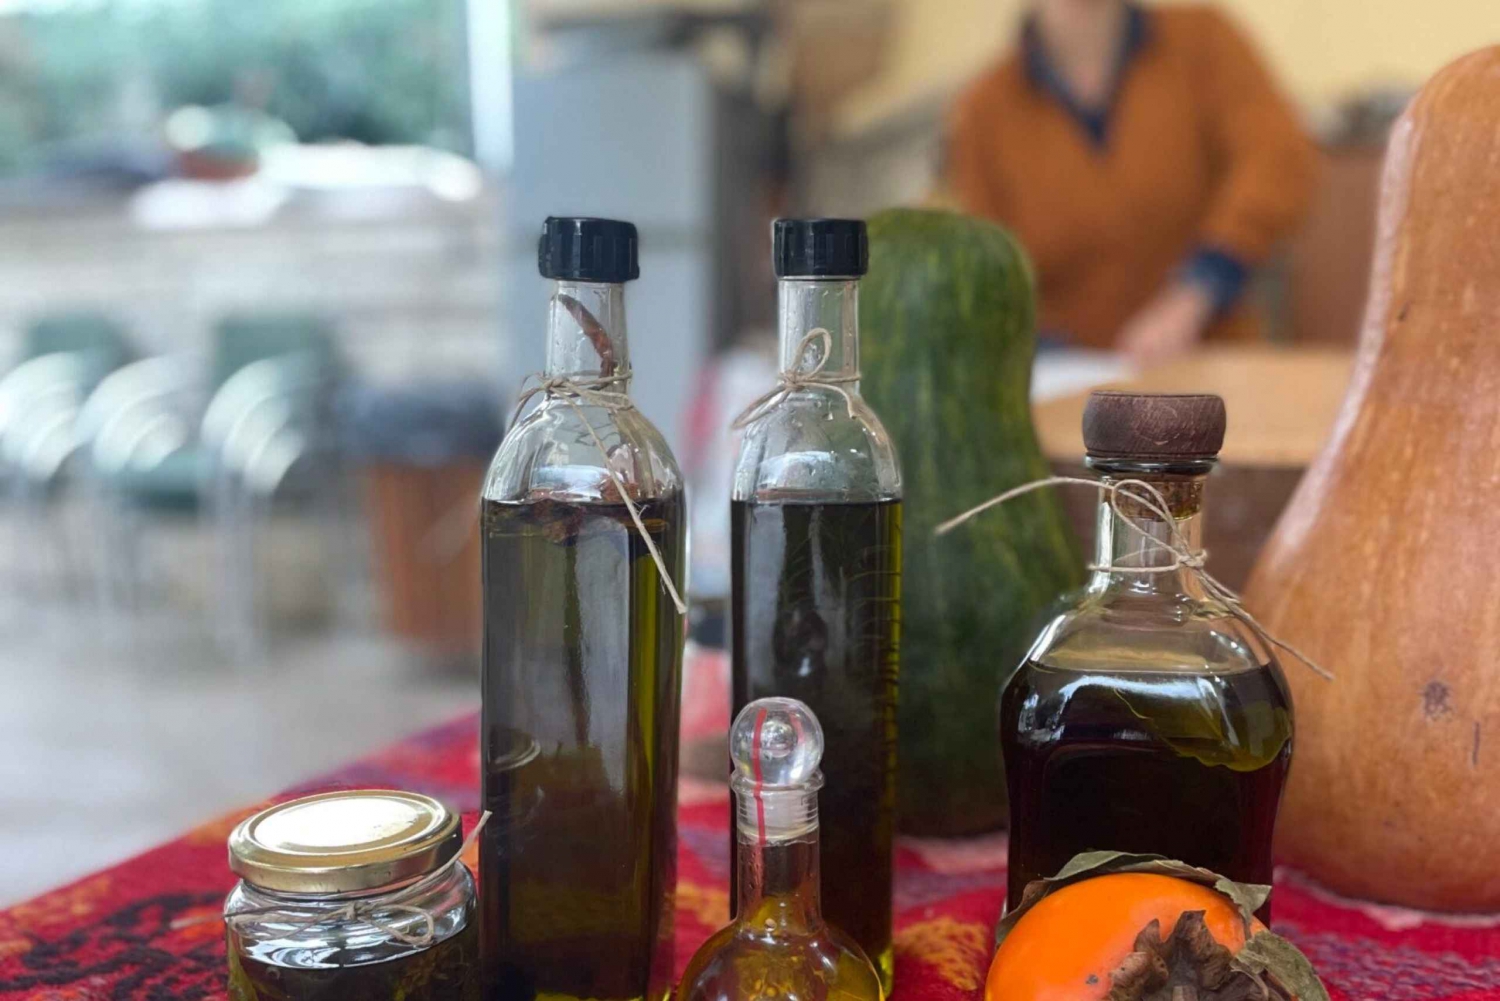 Kurs i bakning av surdegsbröd - provsmakning av olivolja